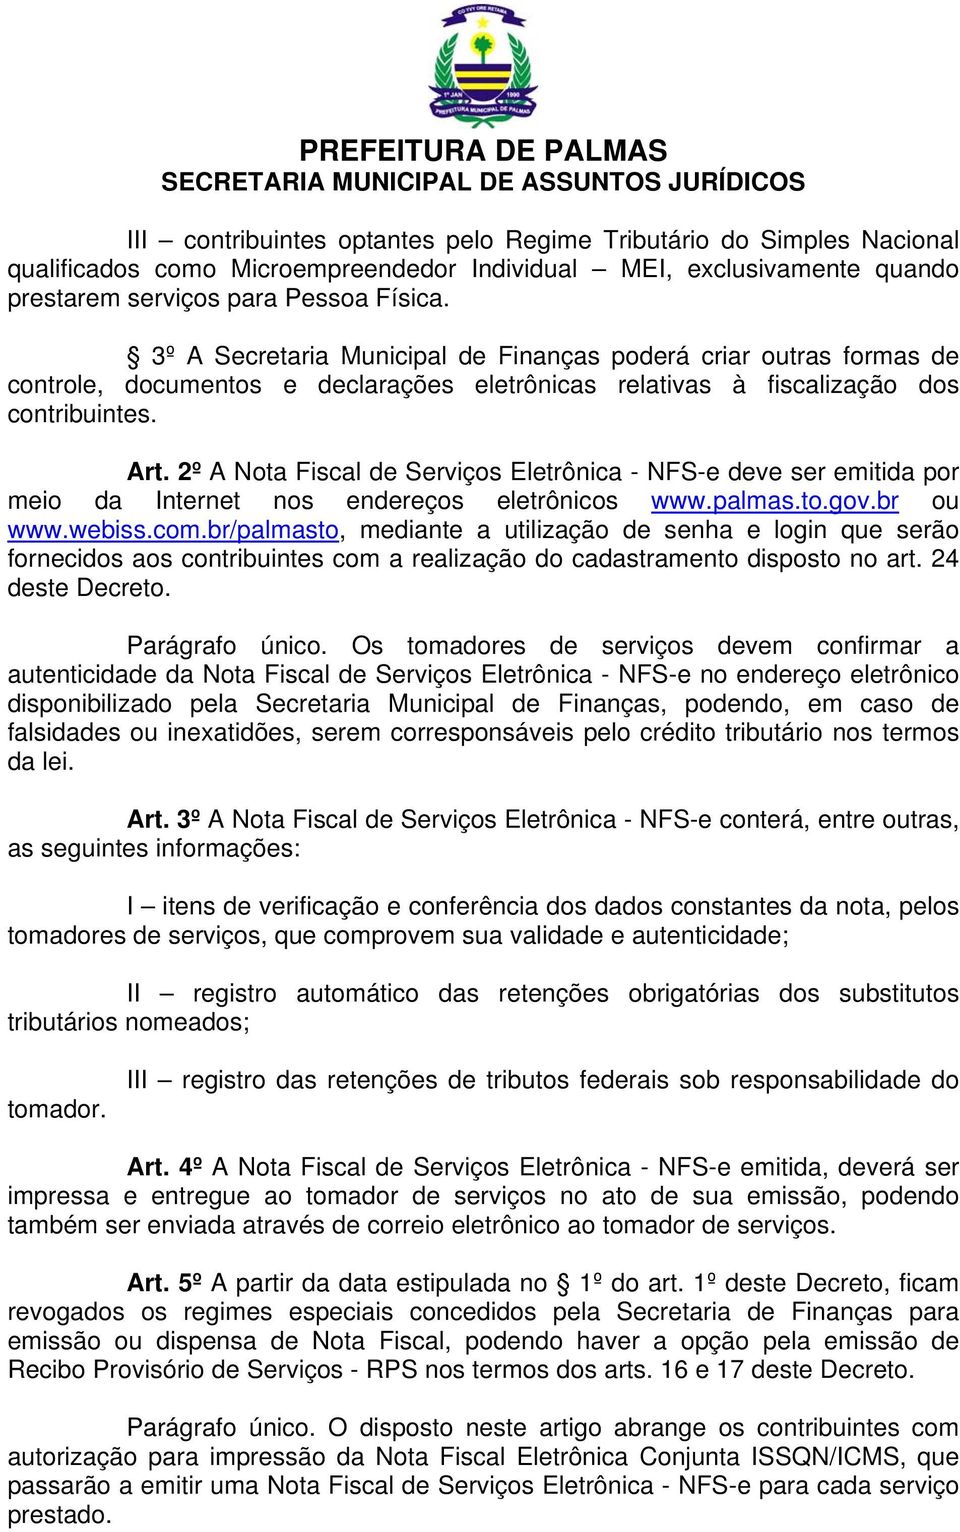 2º A Nota Fiscal de Serviços Eletrônica - NFS-e deve ser emitida por meio da Internet nos endereços eletrônicos www.palmas.to.gov.br ou www.webiss.com.